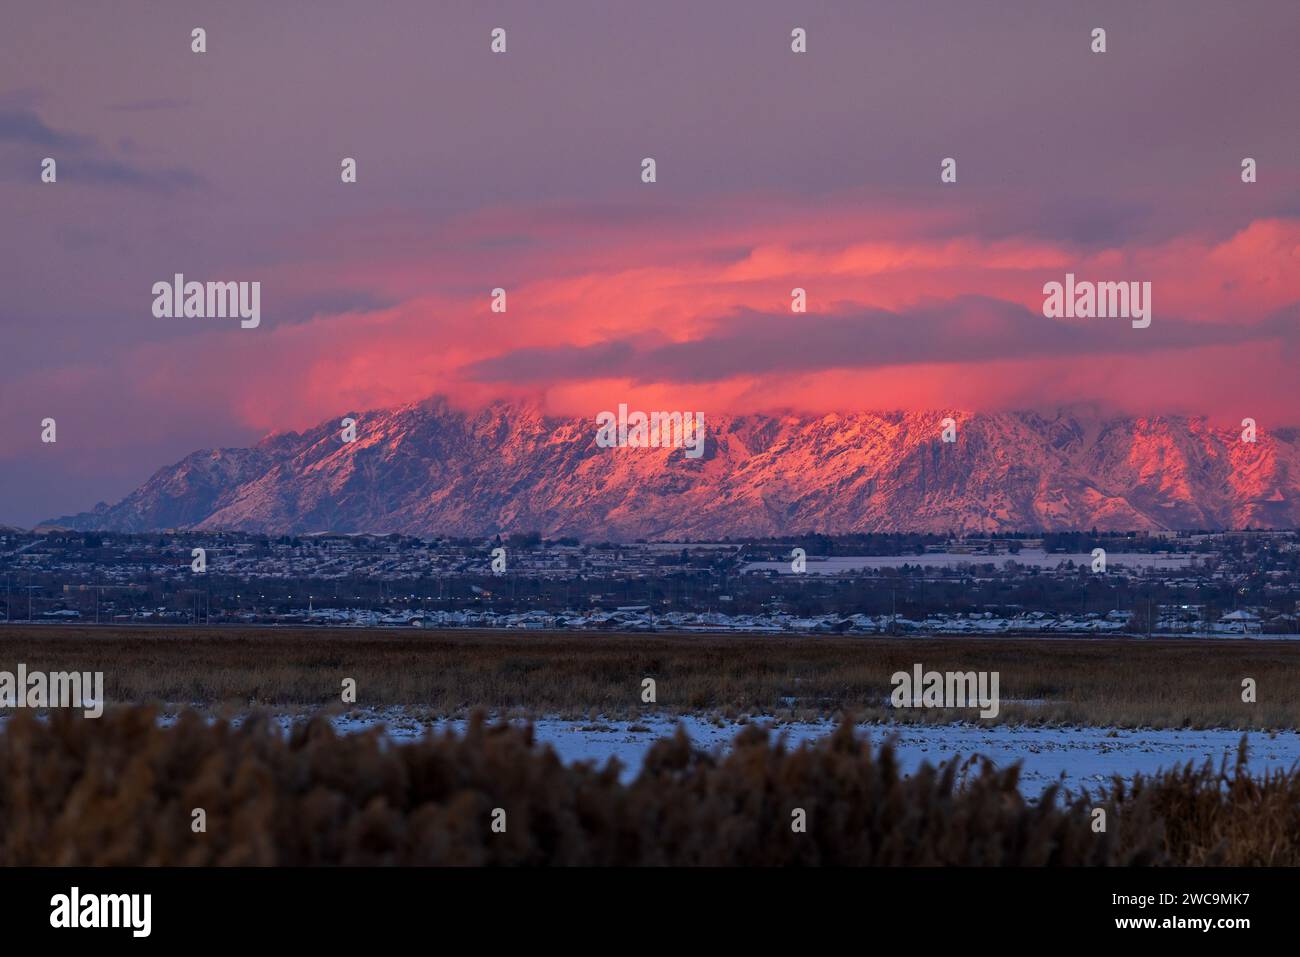 La rémanence du soleil couchant projette une lumière rose sur les nuages et le mont Ben Lomond.sur le côté nord d'Ogden, comté de Weber, Utah, États-Unis. Banque D'Images